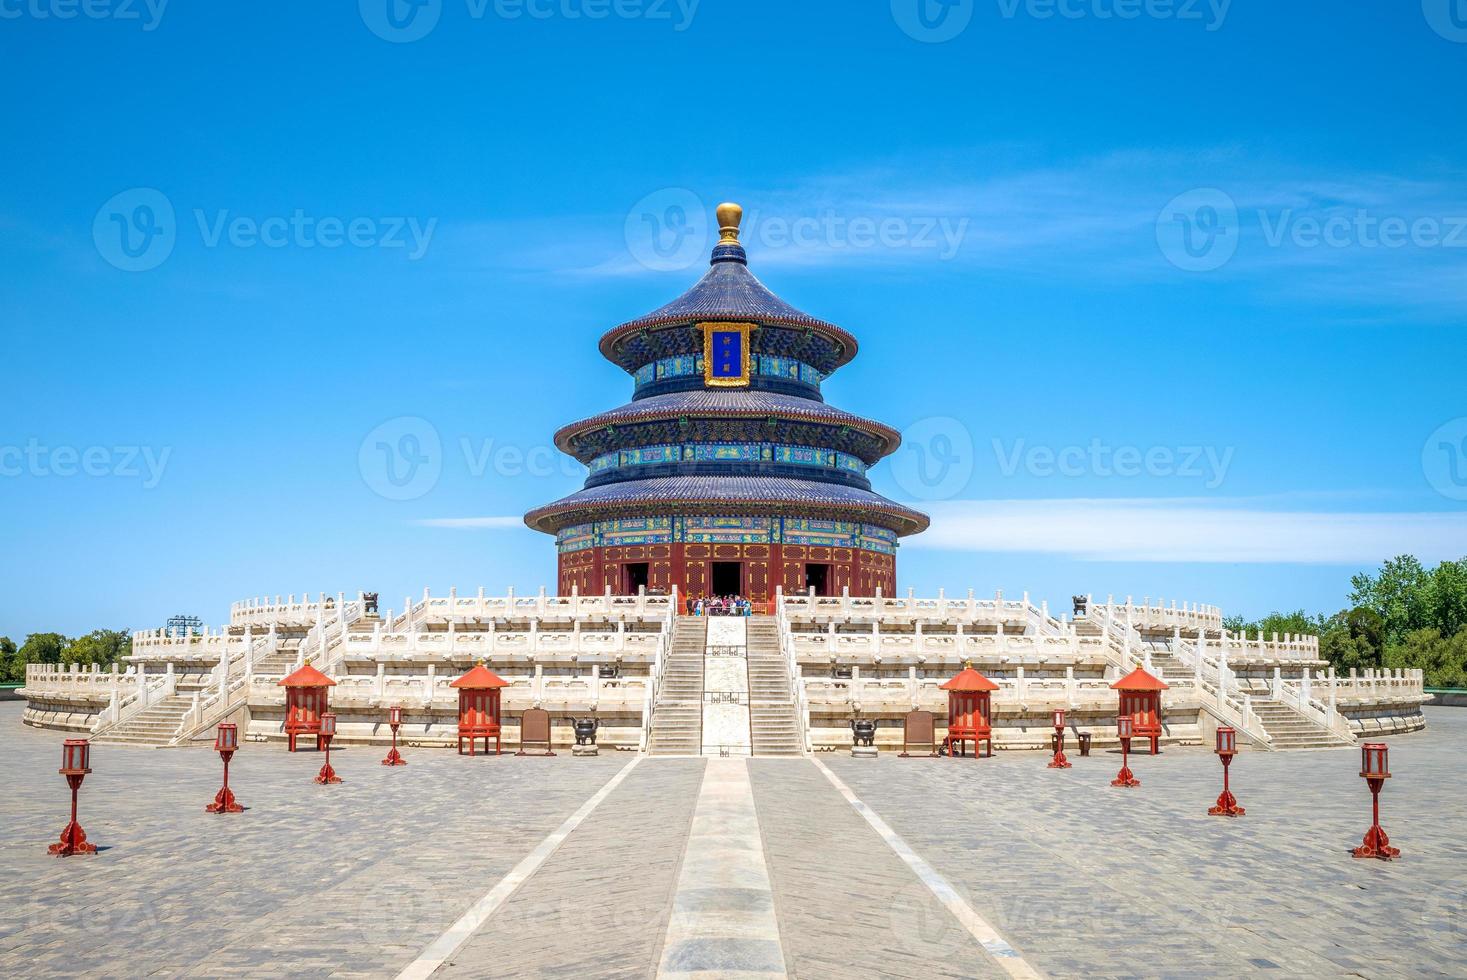 tempel des himmels, das wahrzeichen von peking, china foto